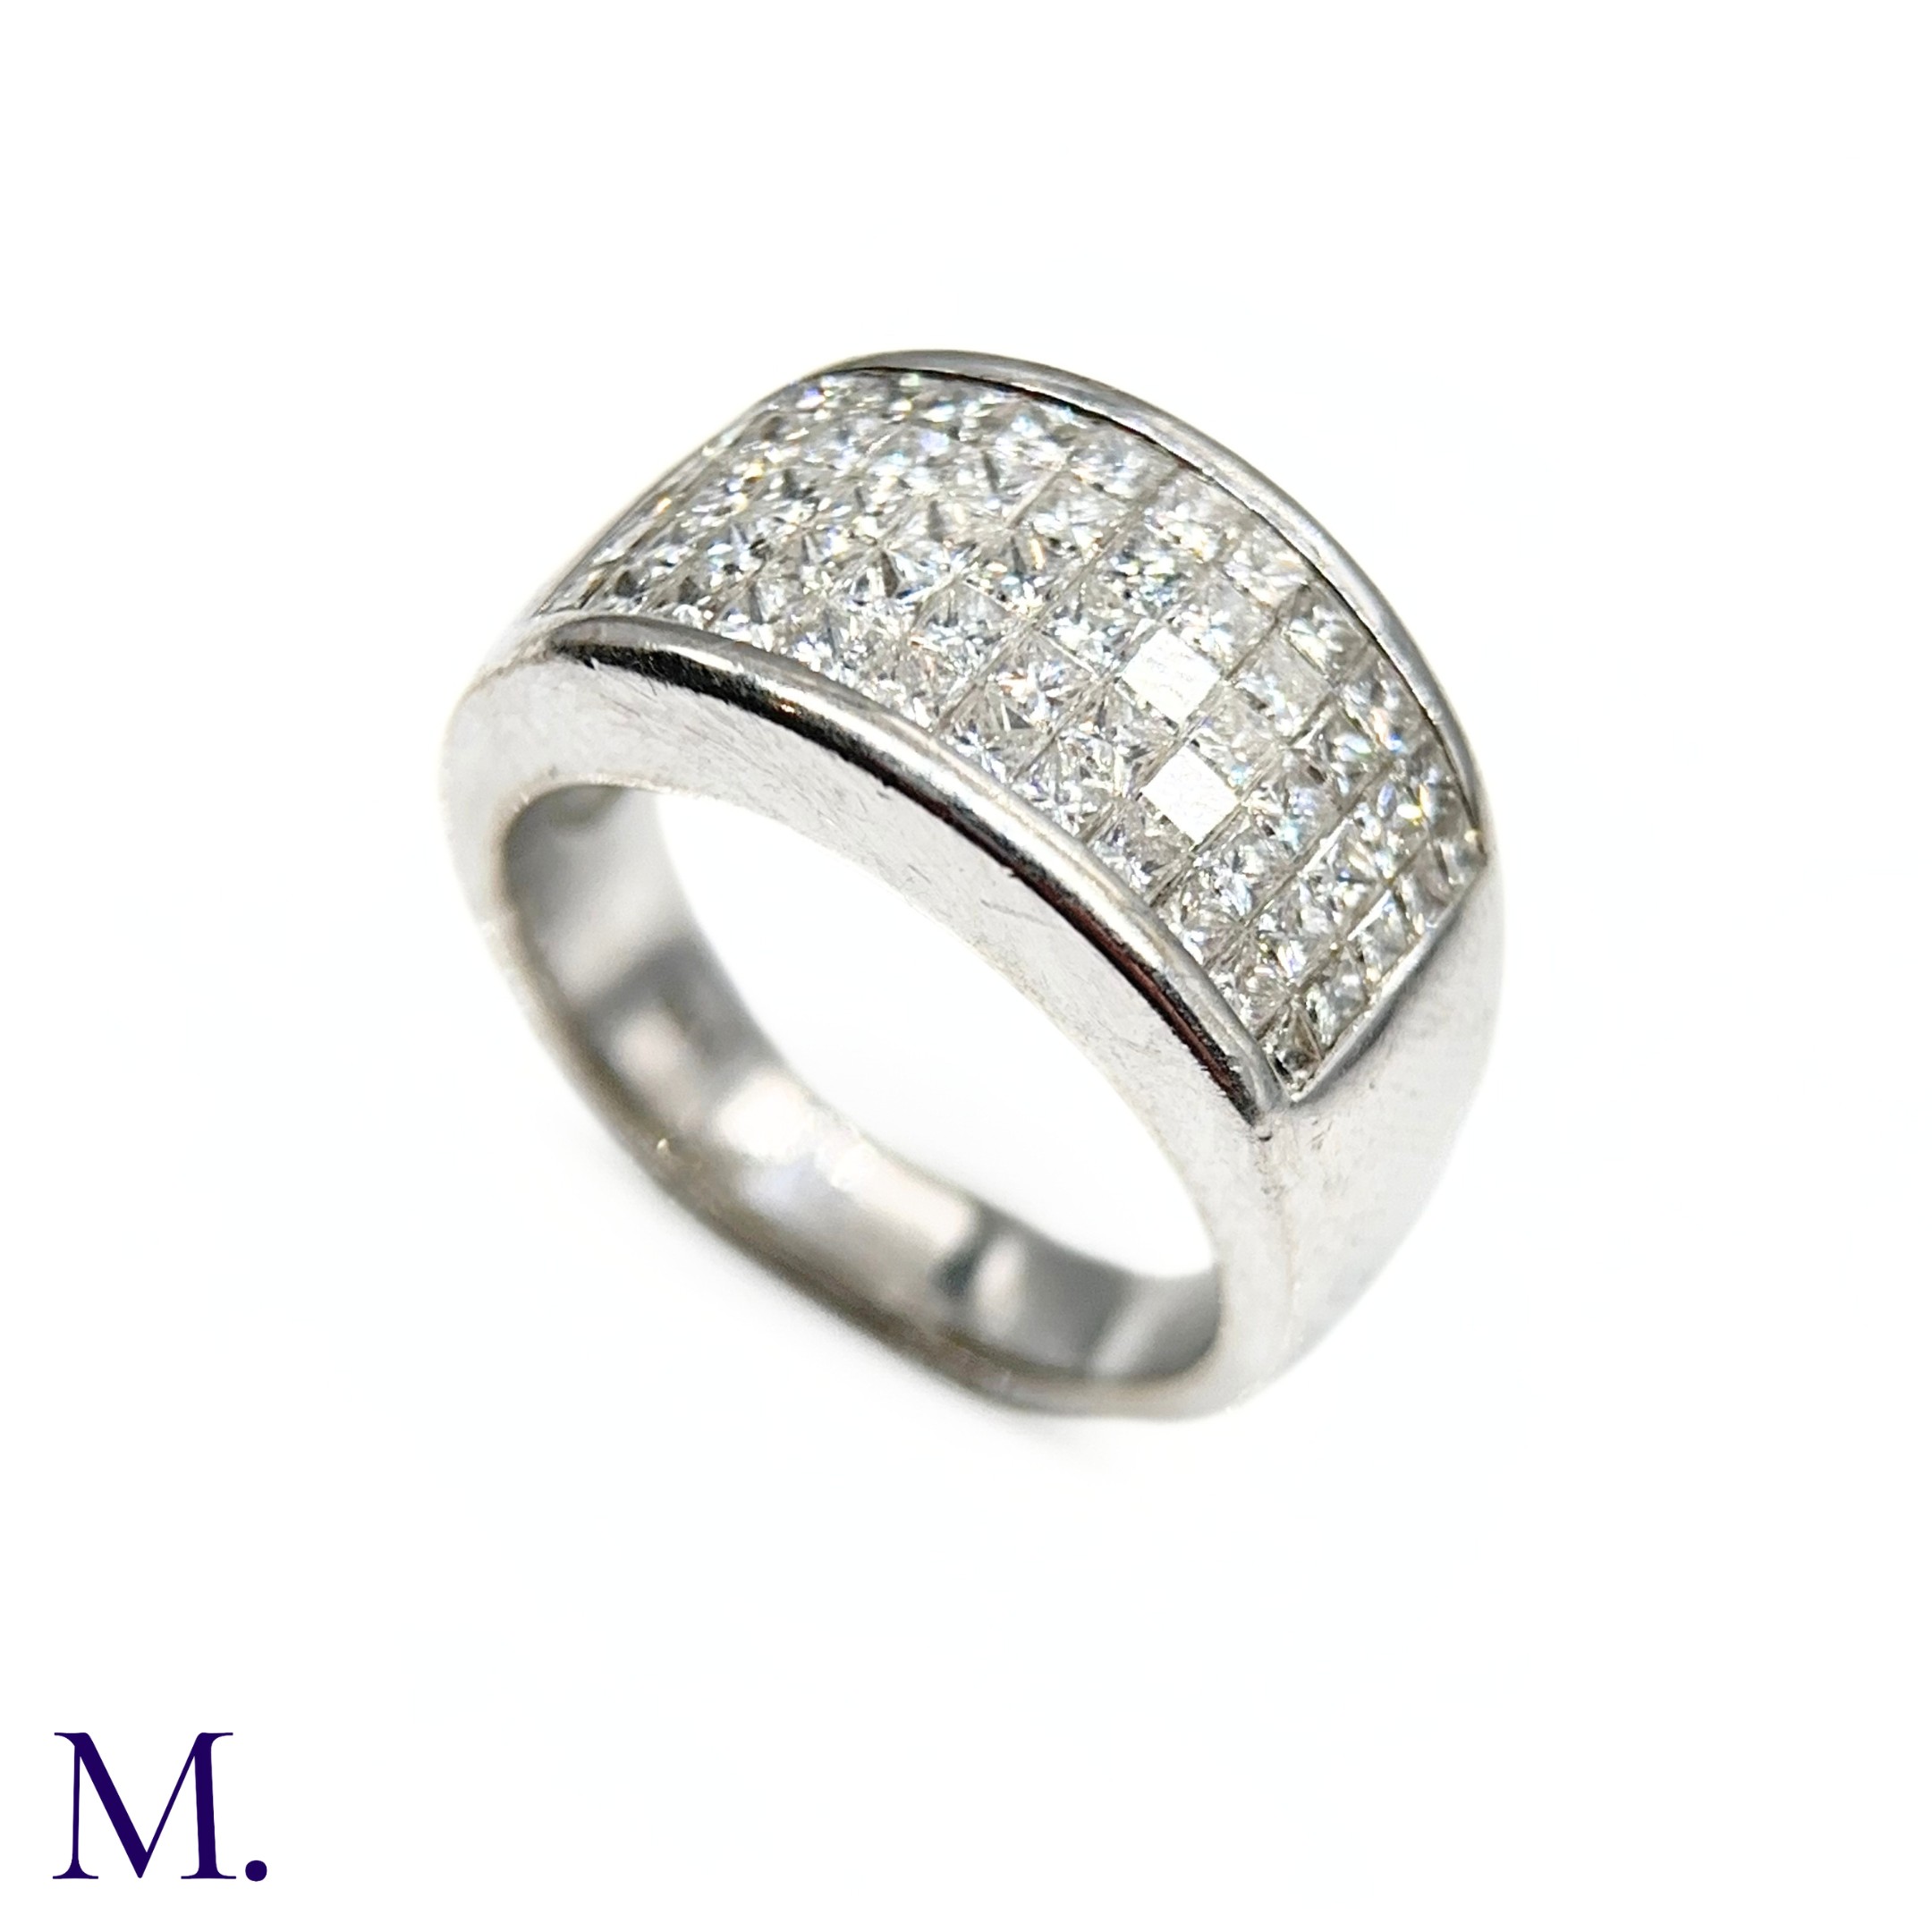 An 5-Row Asscher-cut Diamond Ring - Image 4 of 7